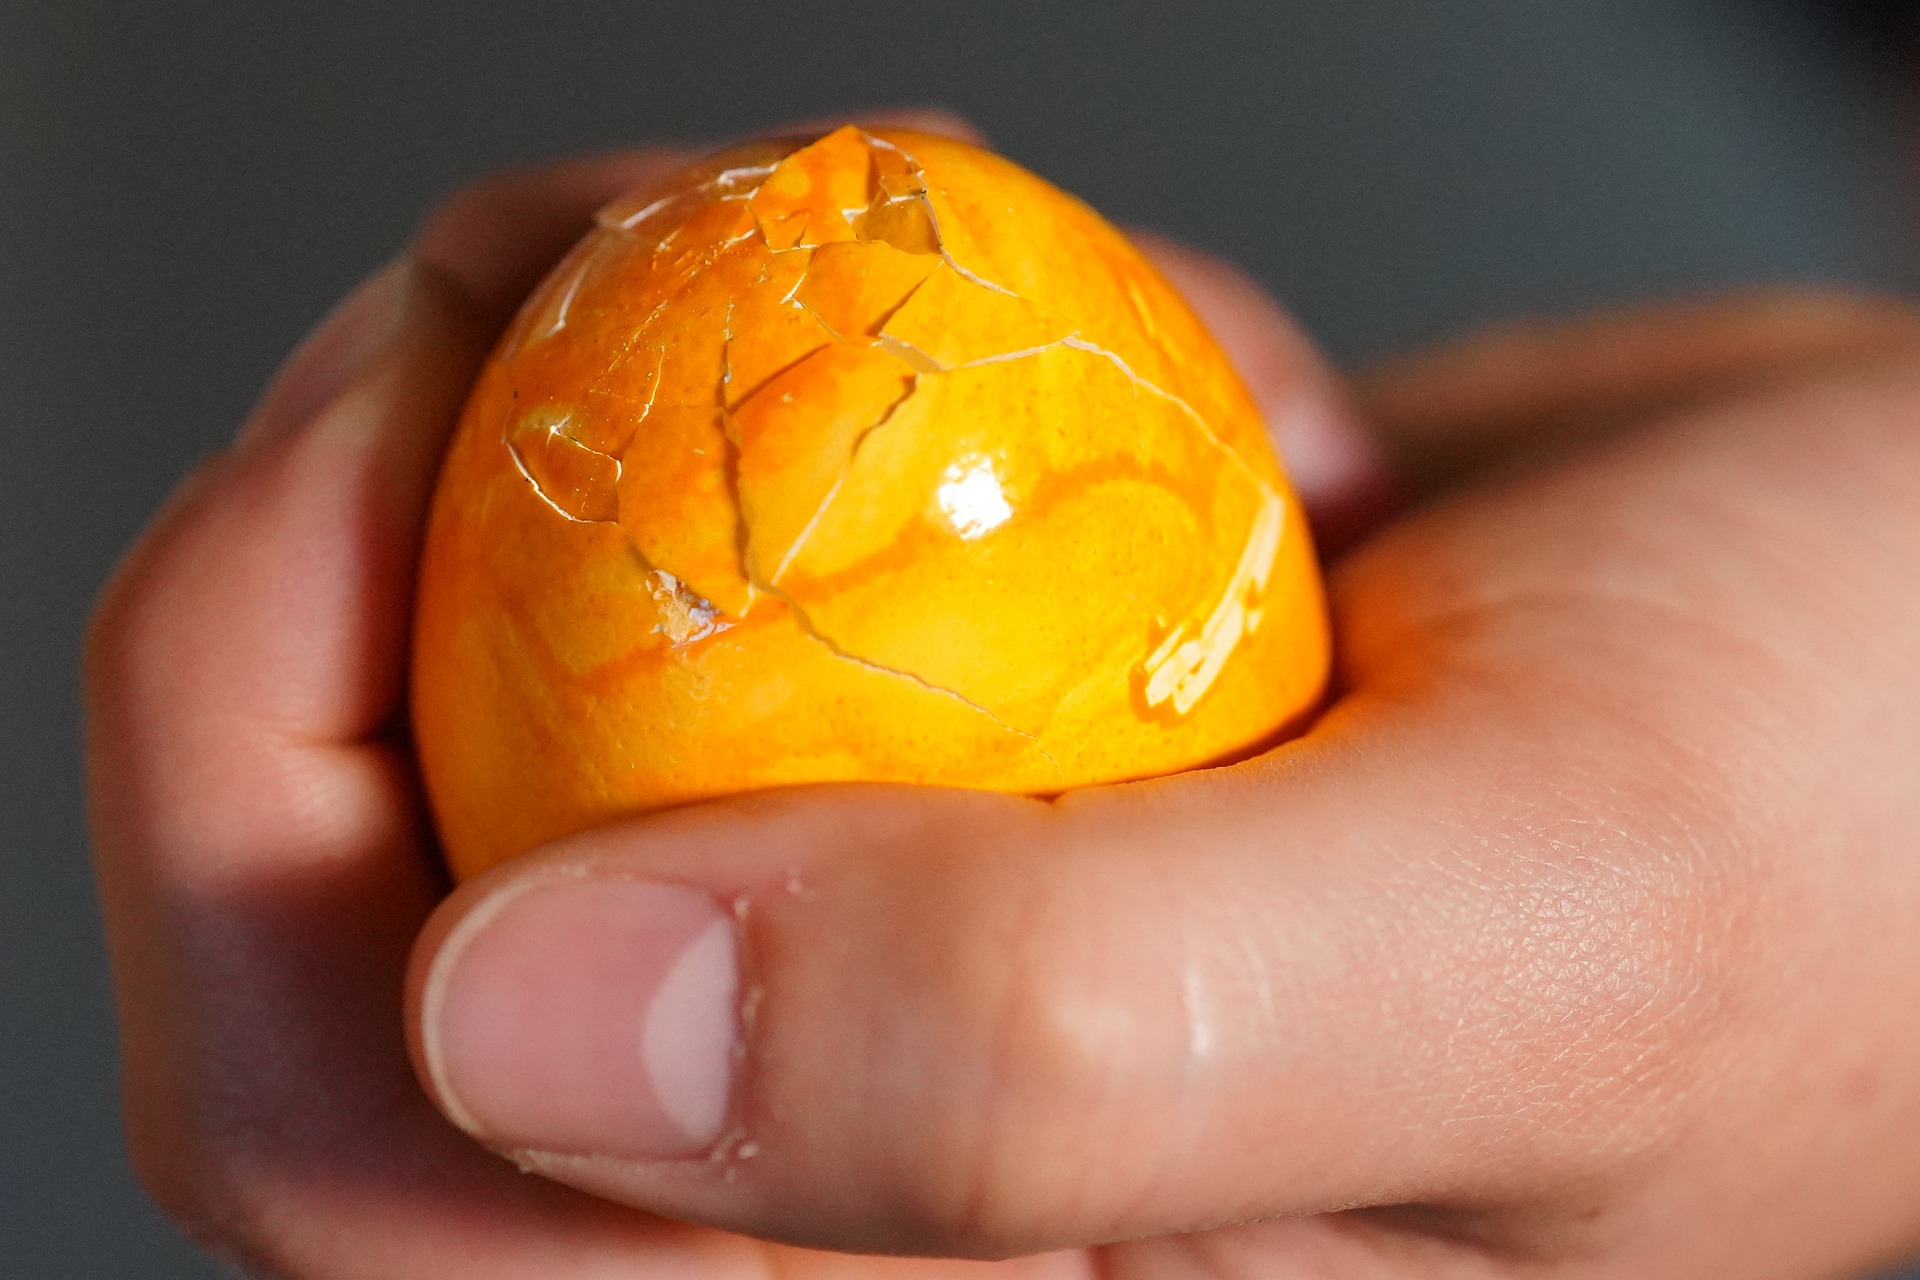 Mimo masywnego kształtu, jajko może dość szybko pęknąć pod obciążeniem, podobnie jak płyta wyboczeniowa Halstenbek.